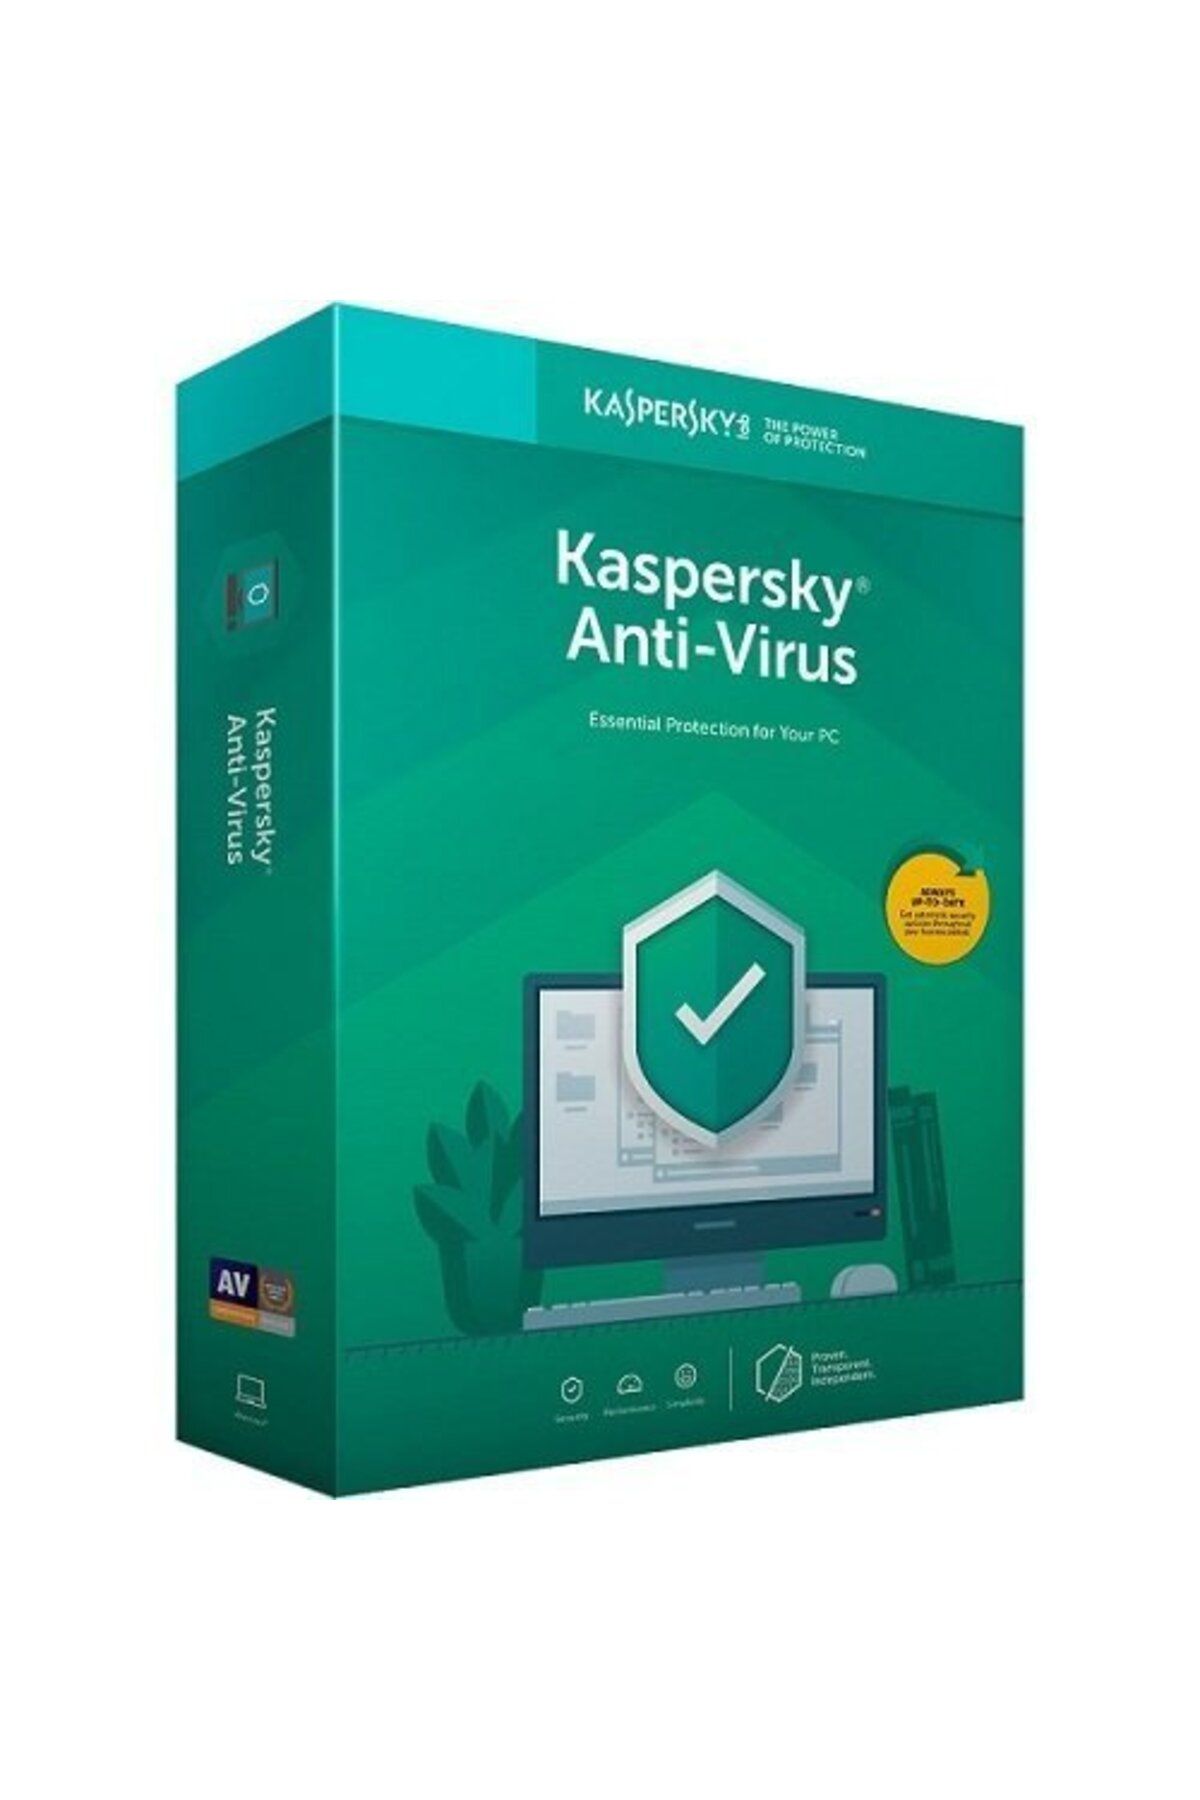 Kaspersky Antıvırus Türkçe 4 Kullanıcı 1 Yıl Box